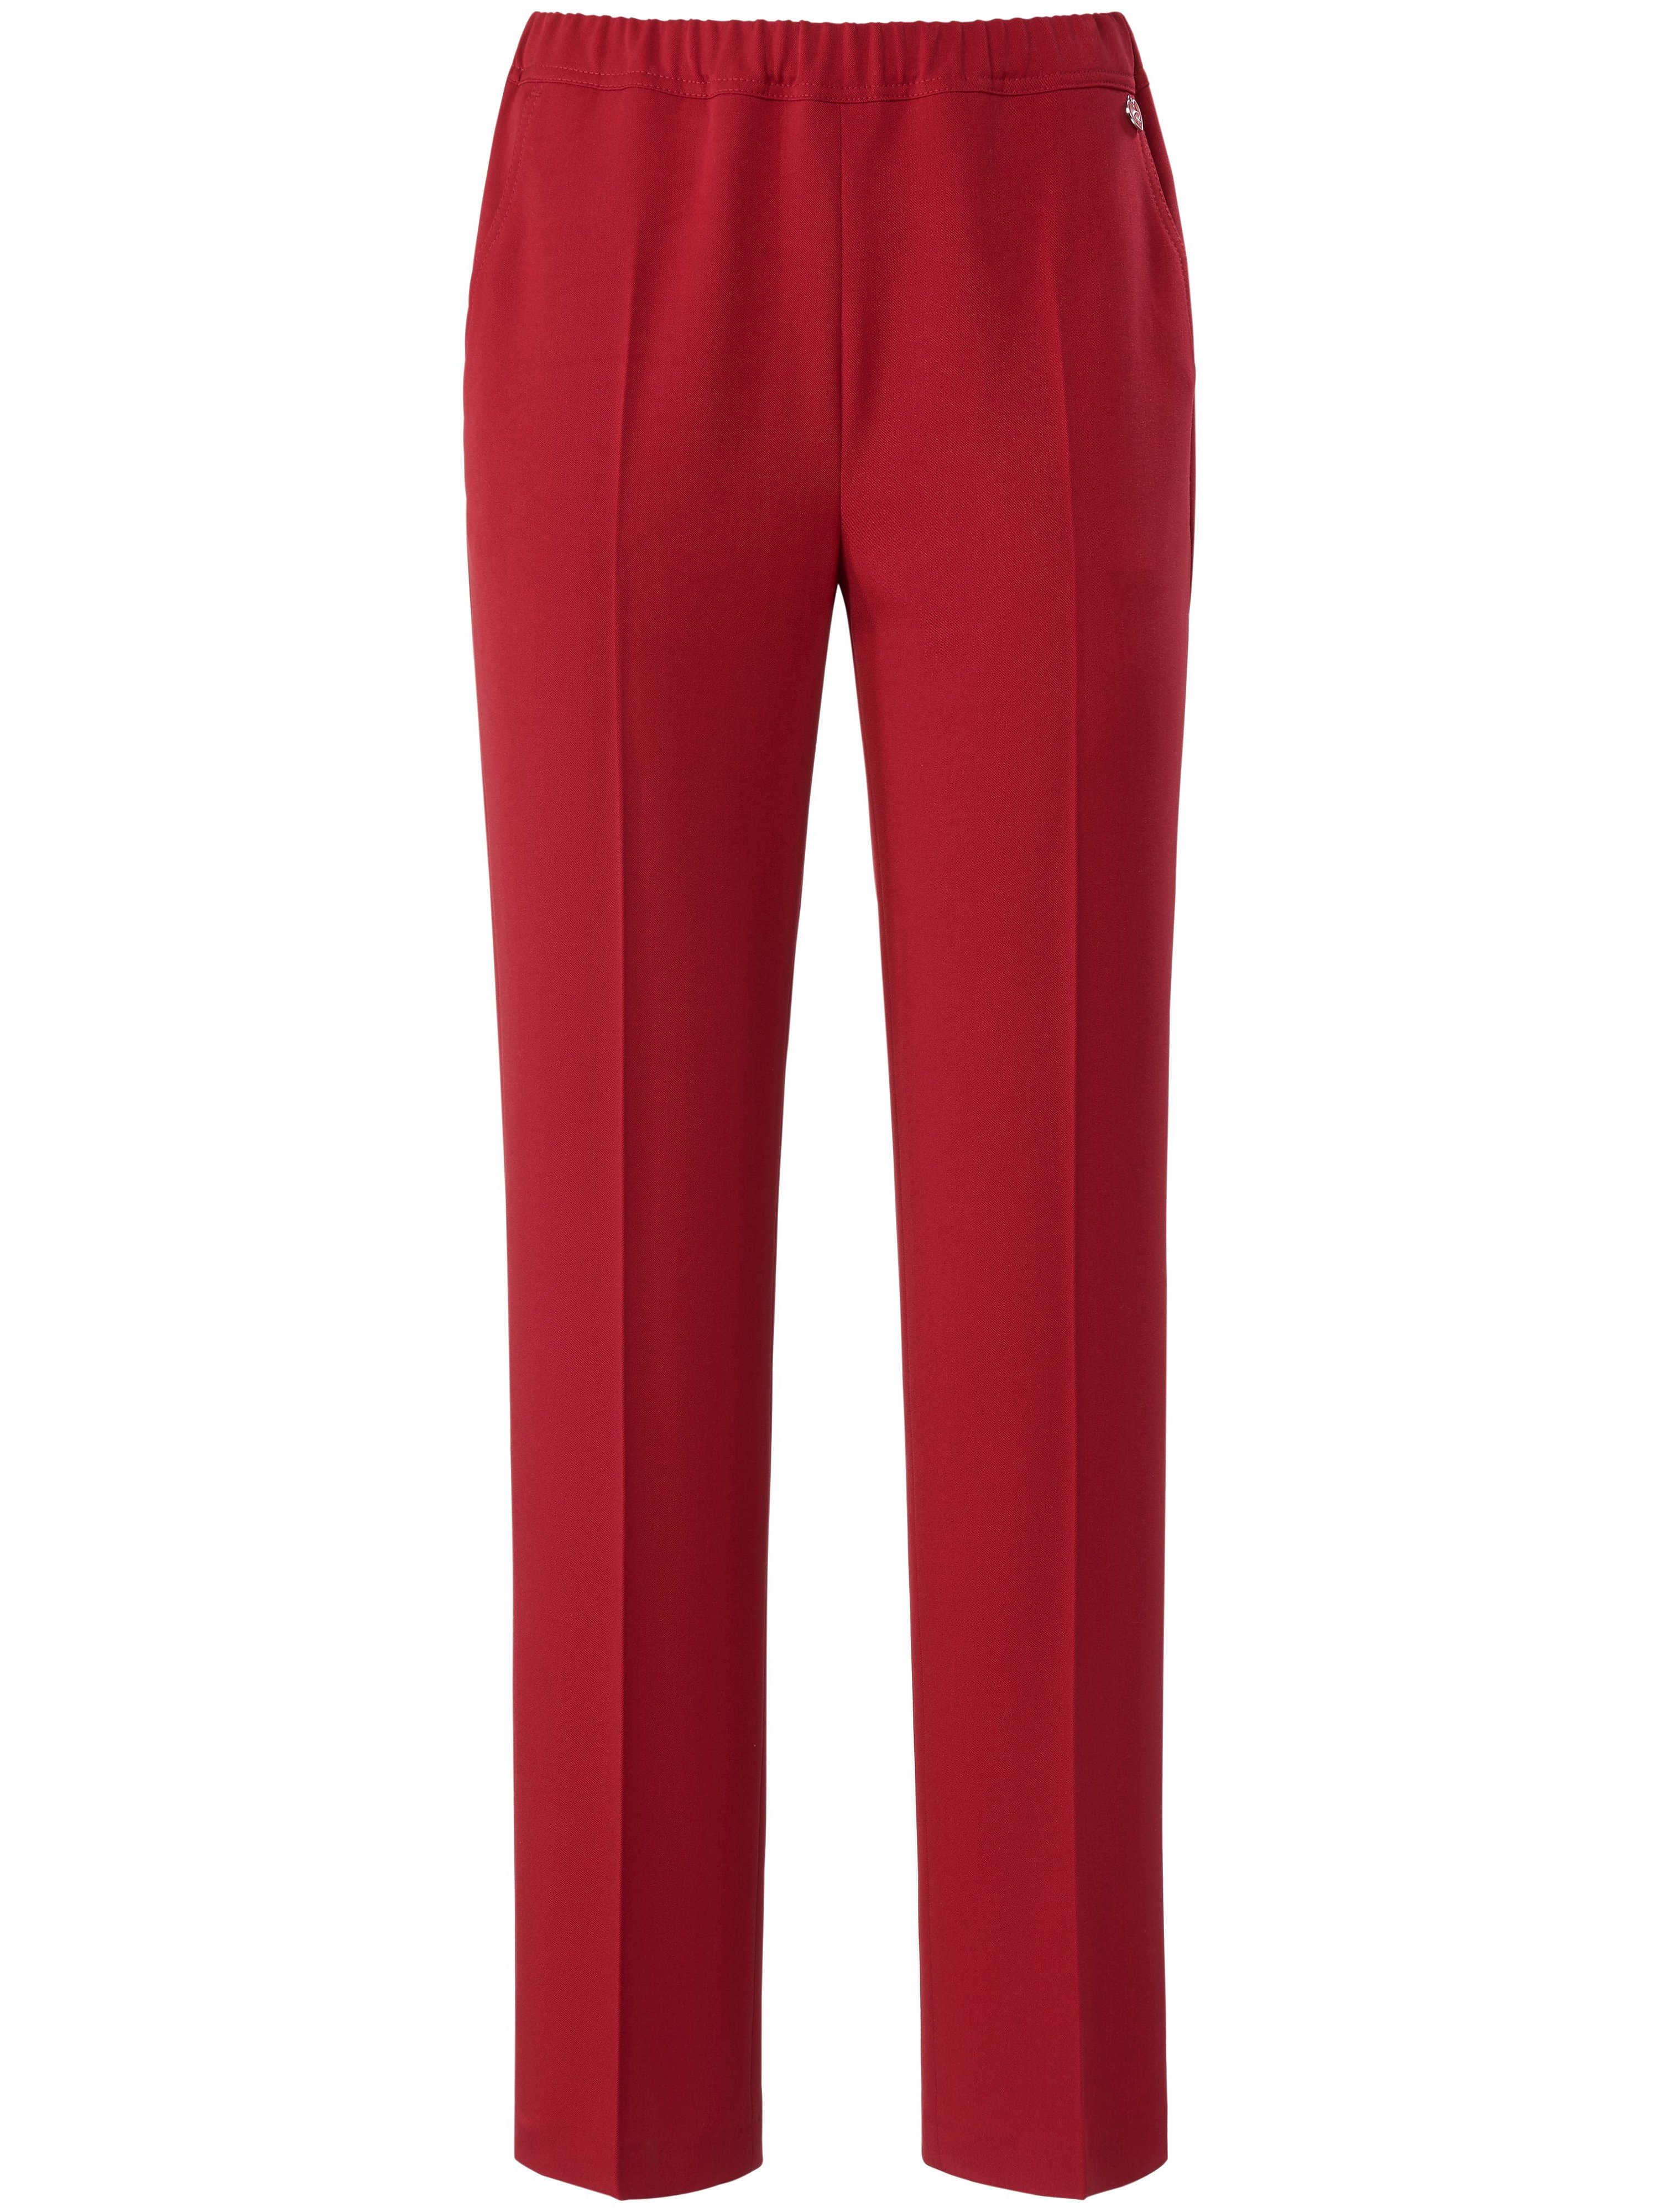 Le pantalon taille élastiquée modèle Jade  Relaxed by Toni rouge taille 38